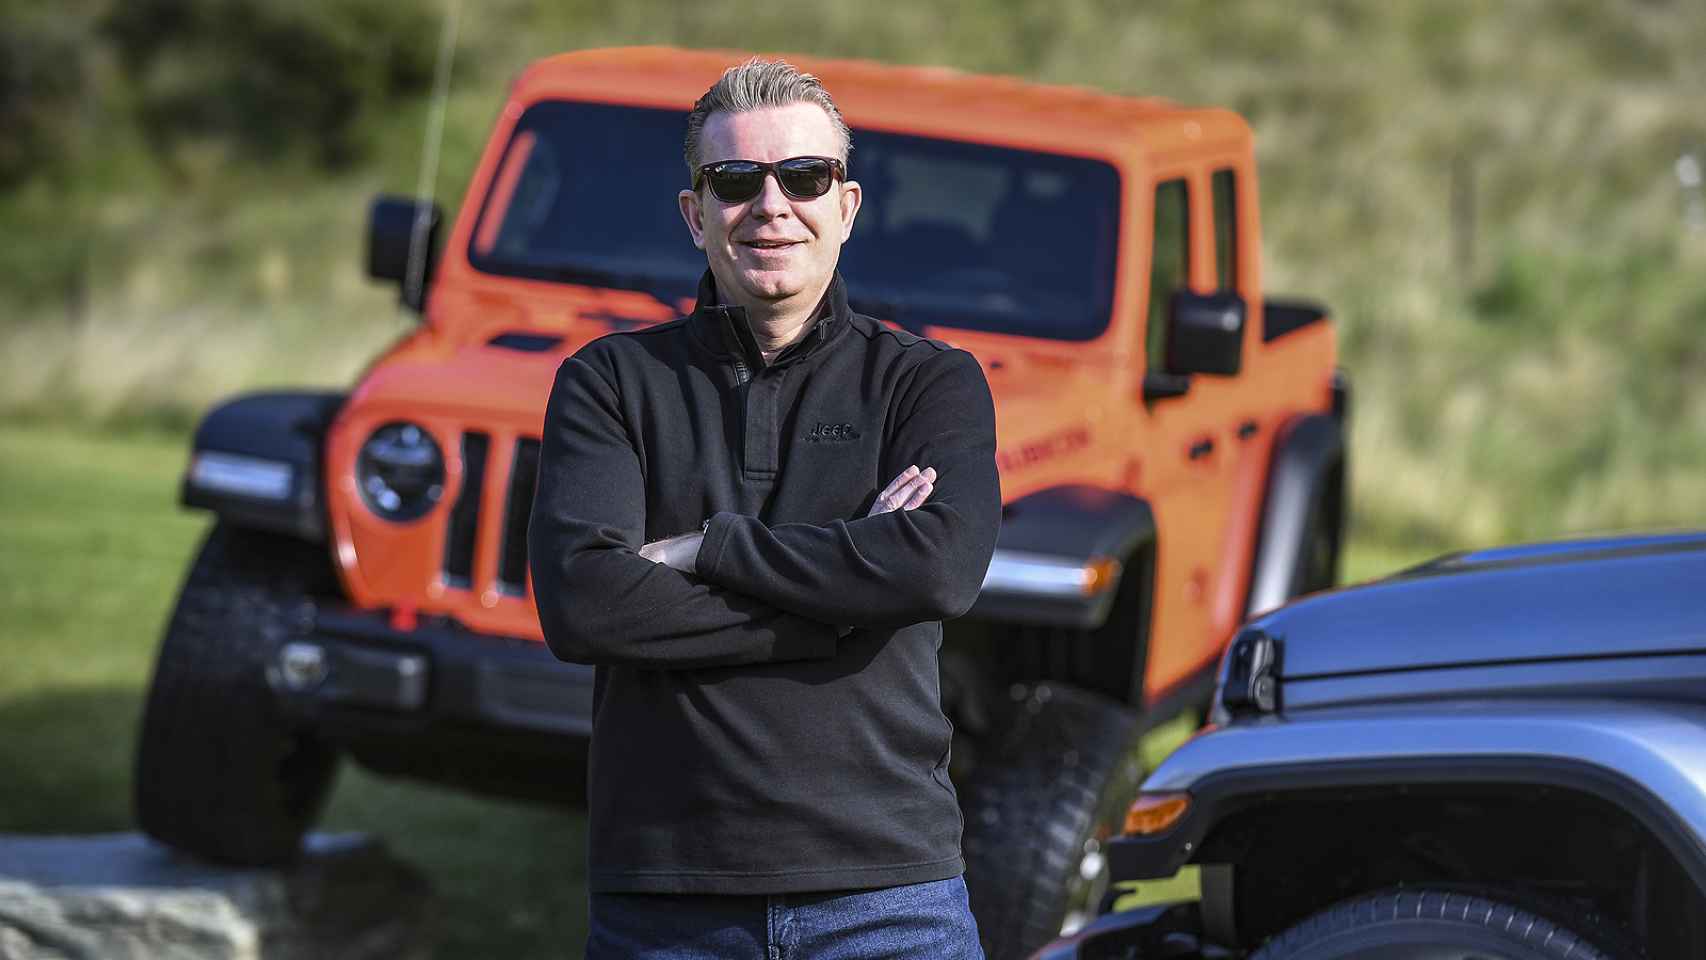 Meunier es el responsable de Jeep, marca perteneciente al Grupo Stellantis.